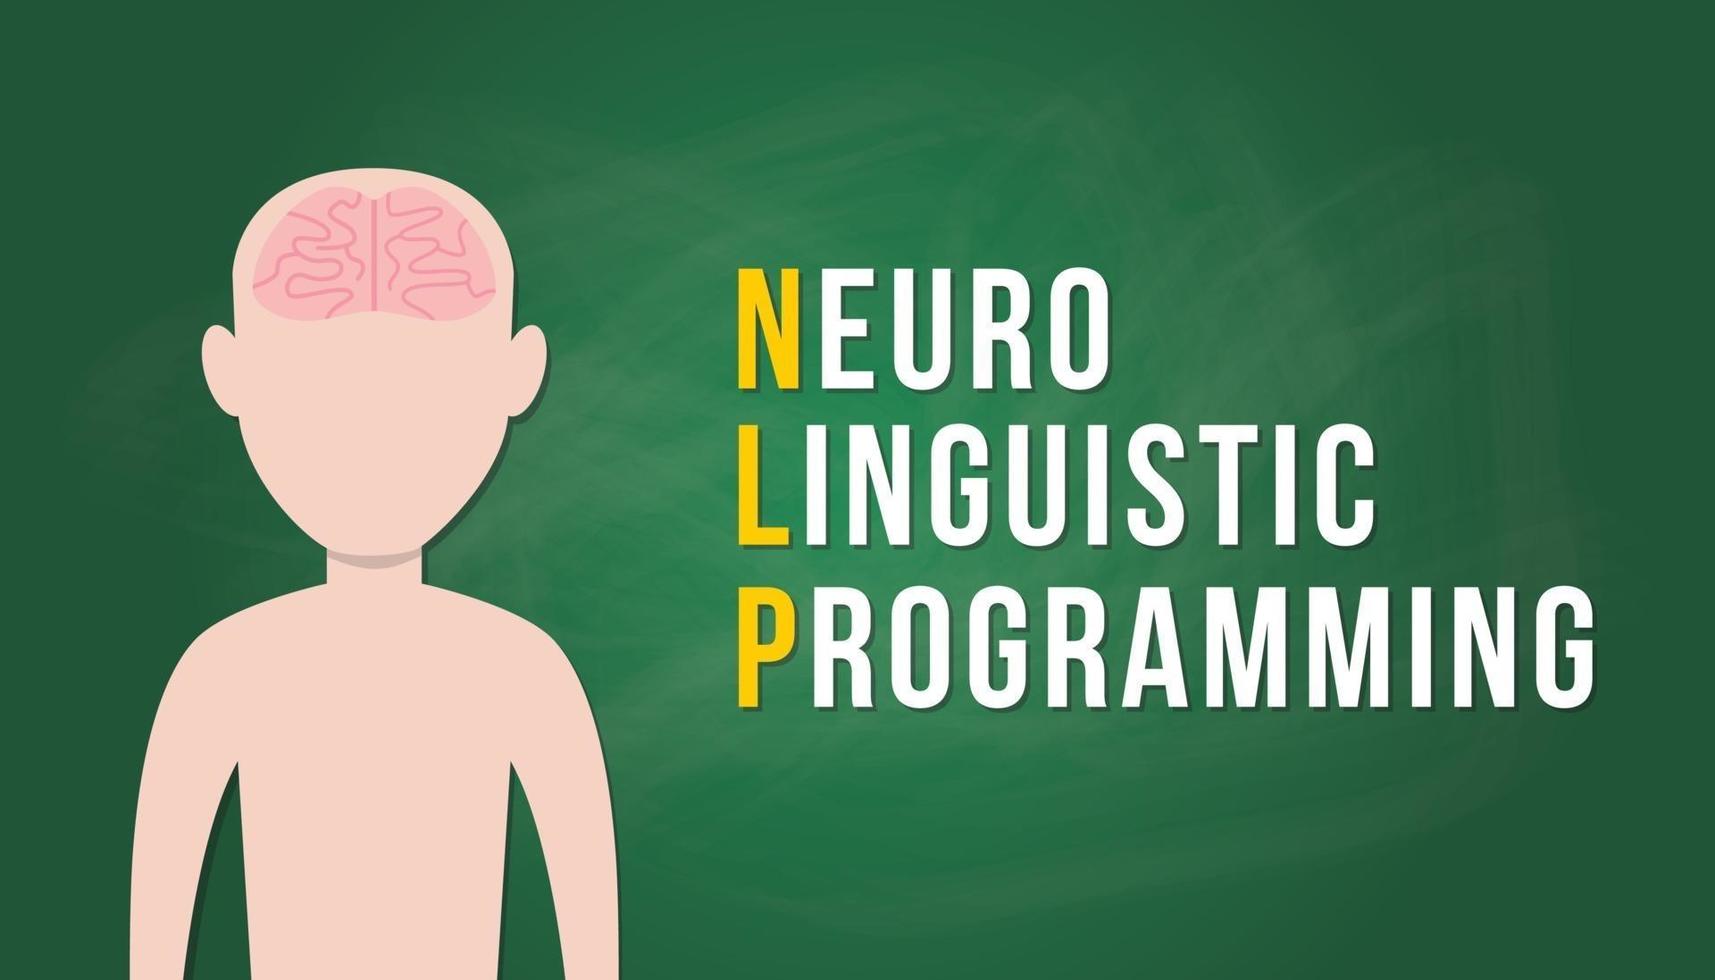 nlp neuro linguïstisch programmeerconcept met menselijk hoofd mensen met hersenen en tekstbanner - vector